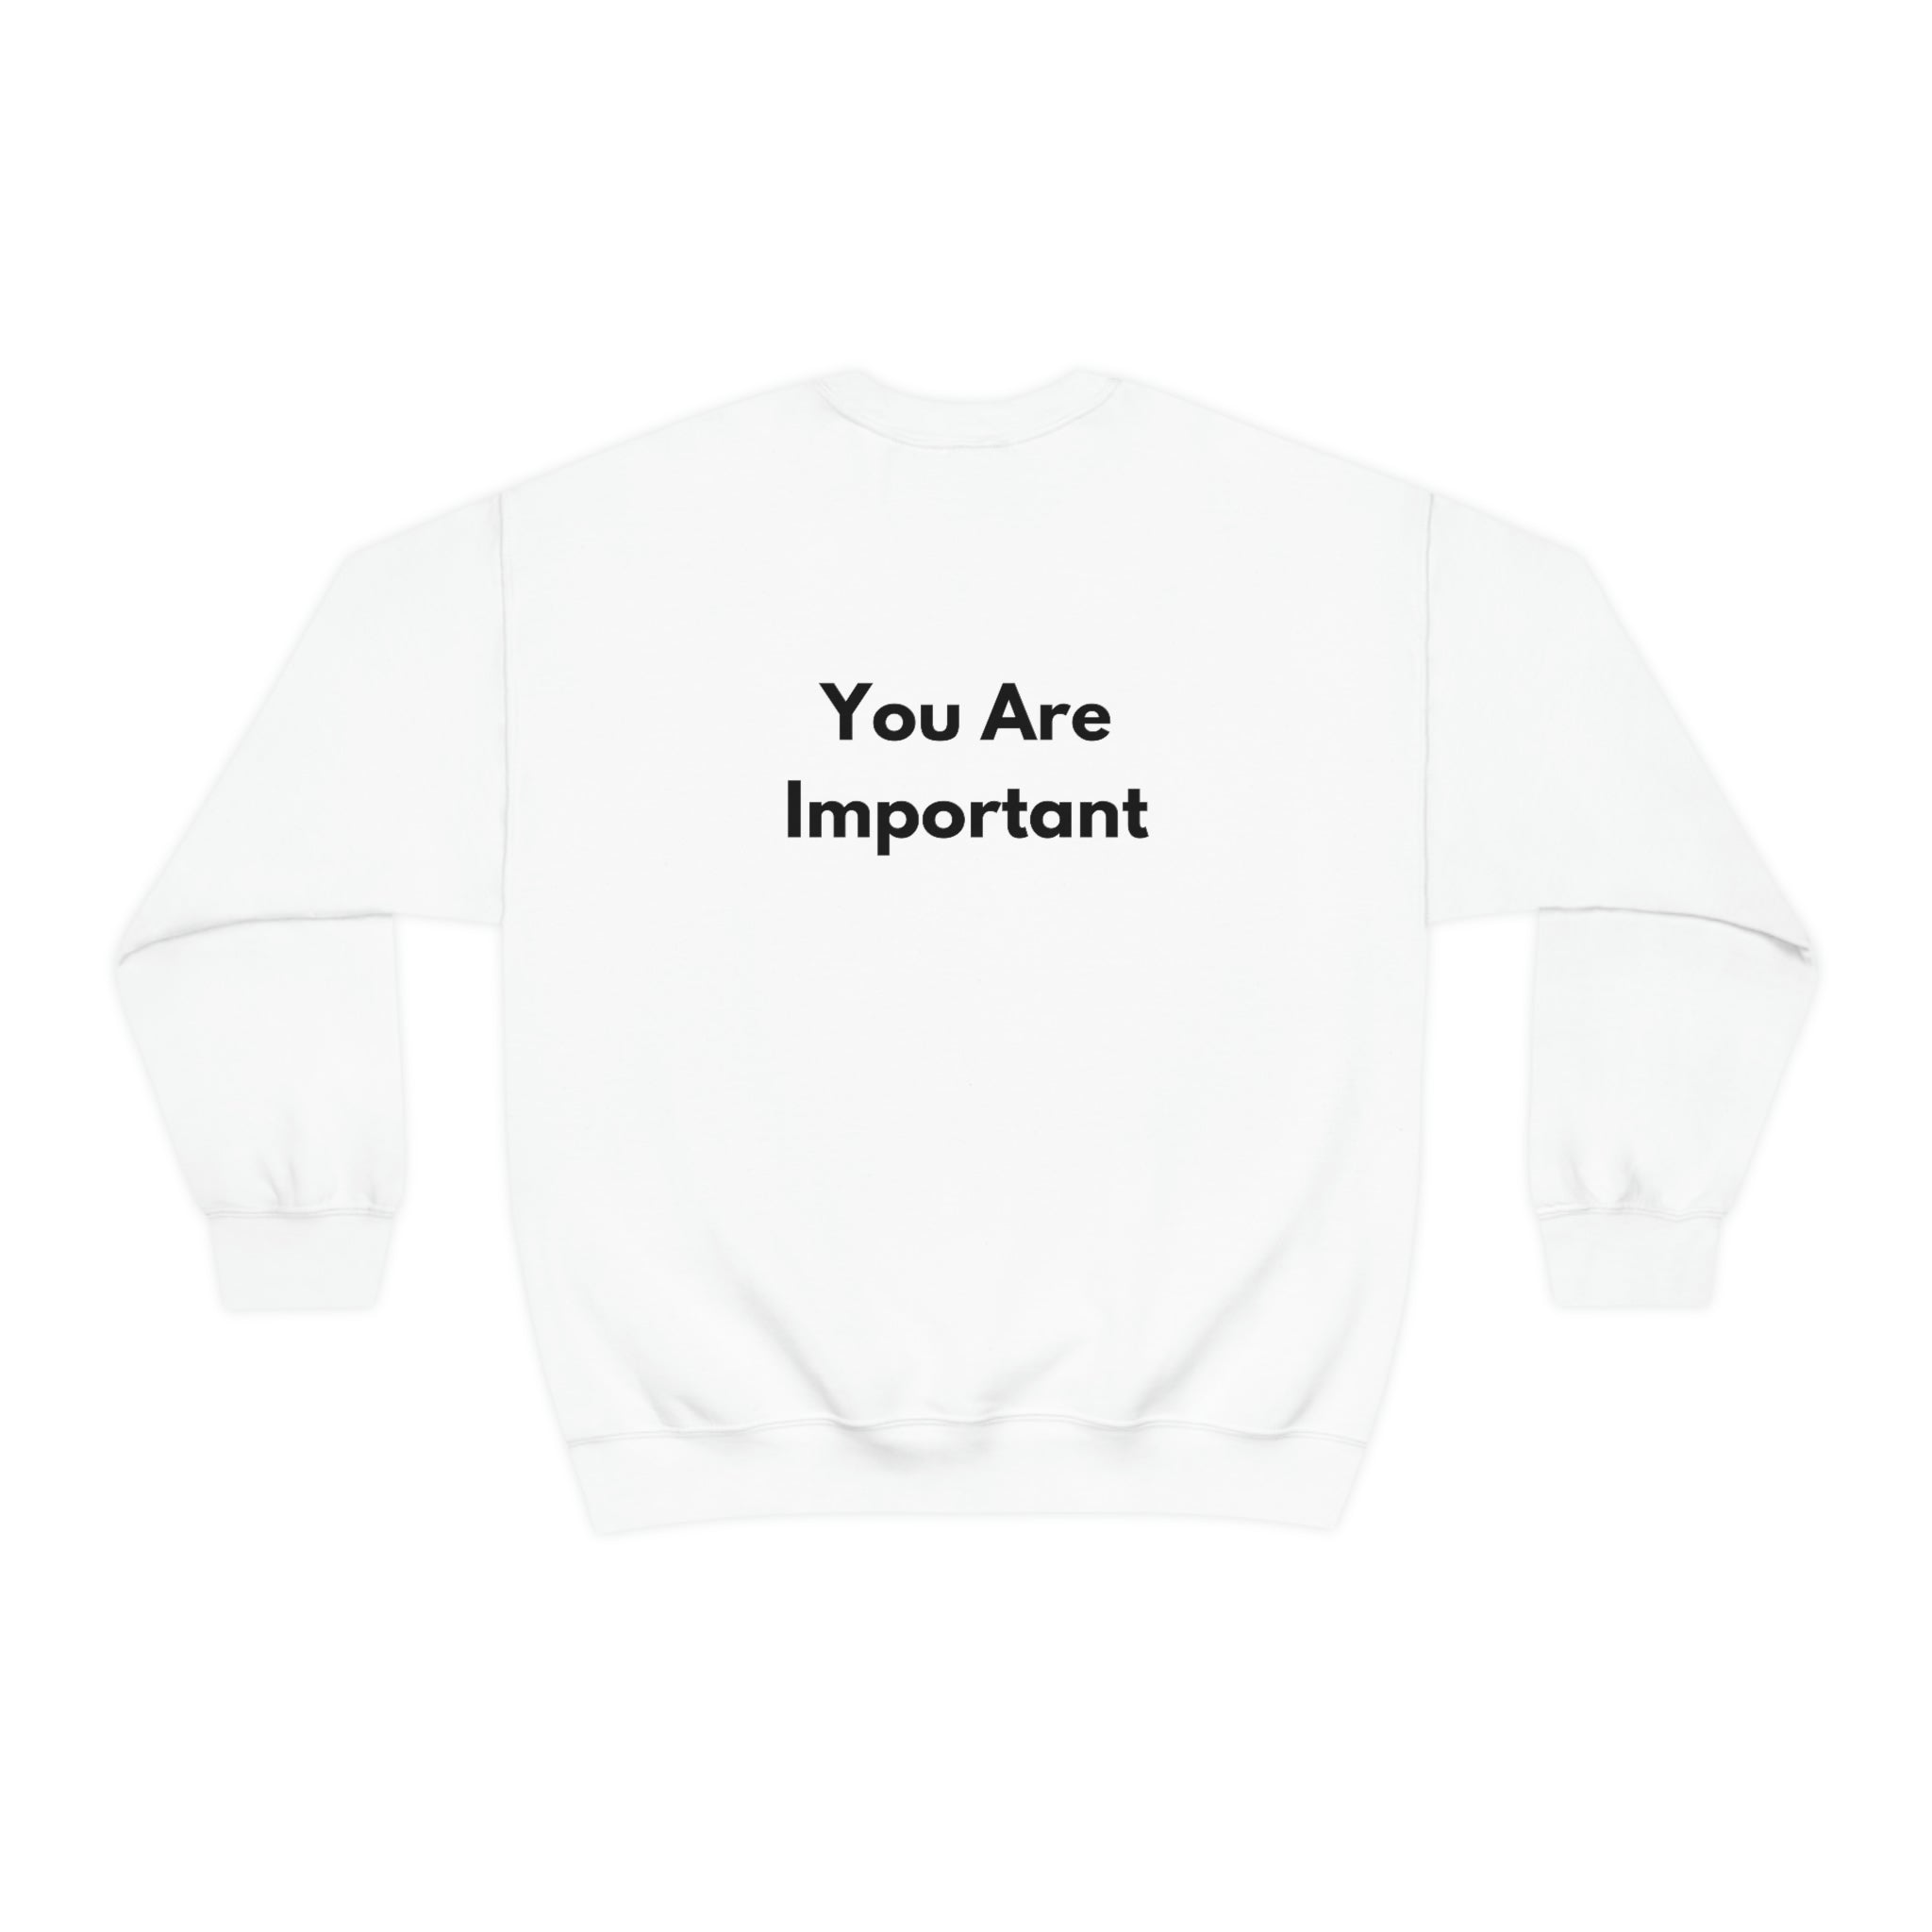 "You are Important" Minimalist Unisex Sweatshirt